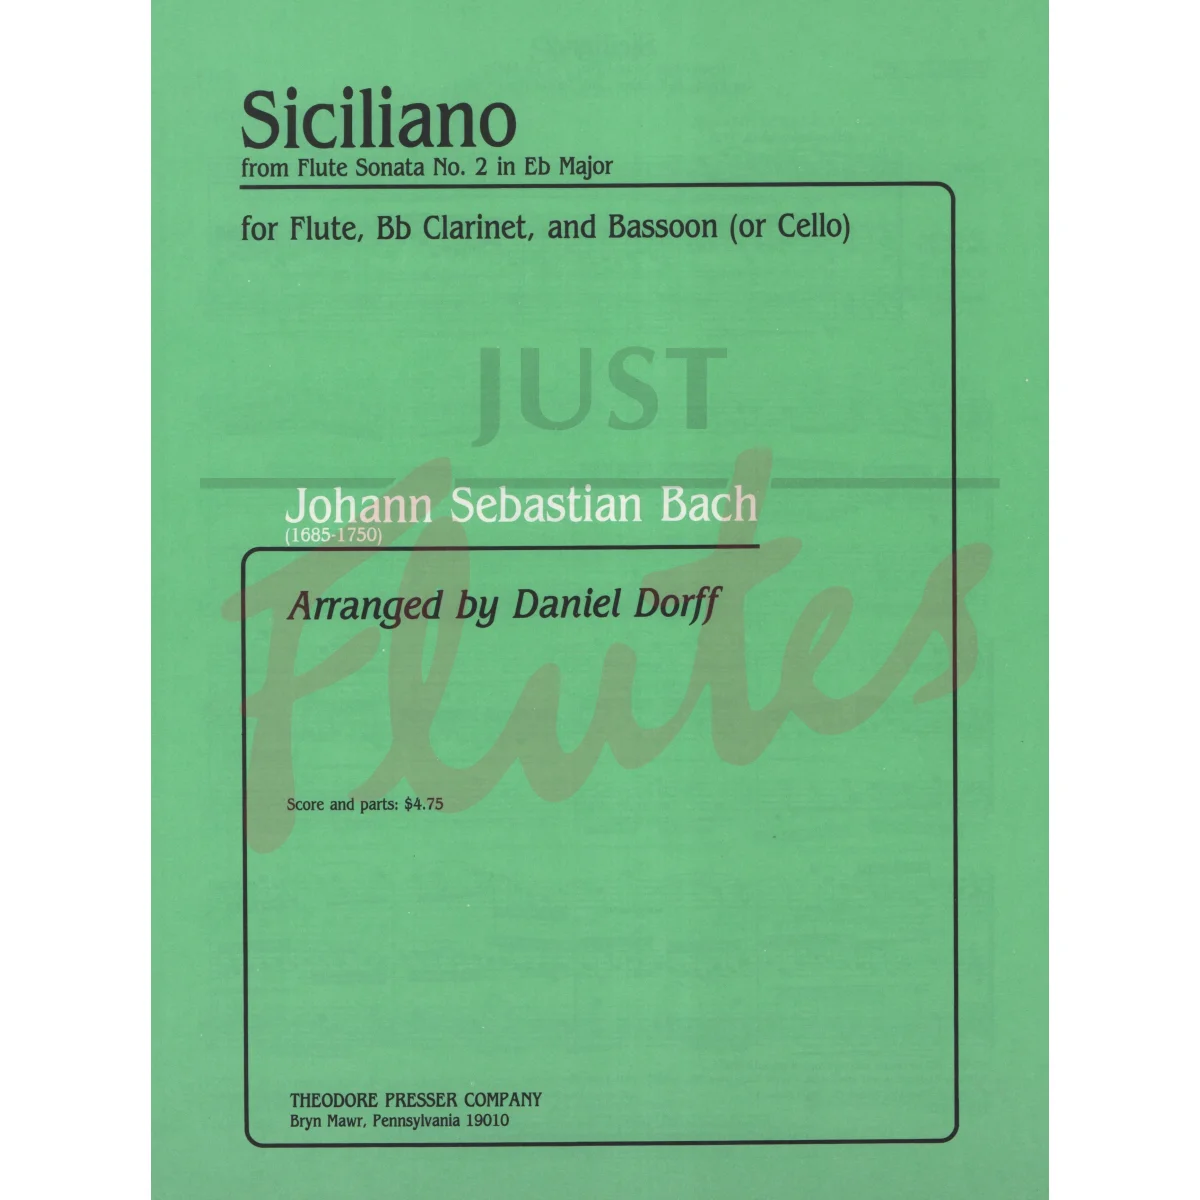 Siciliano from Flute Sonata No 2 in Eb major for Flute, Clarinet and Bassoon/Cello